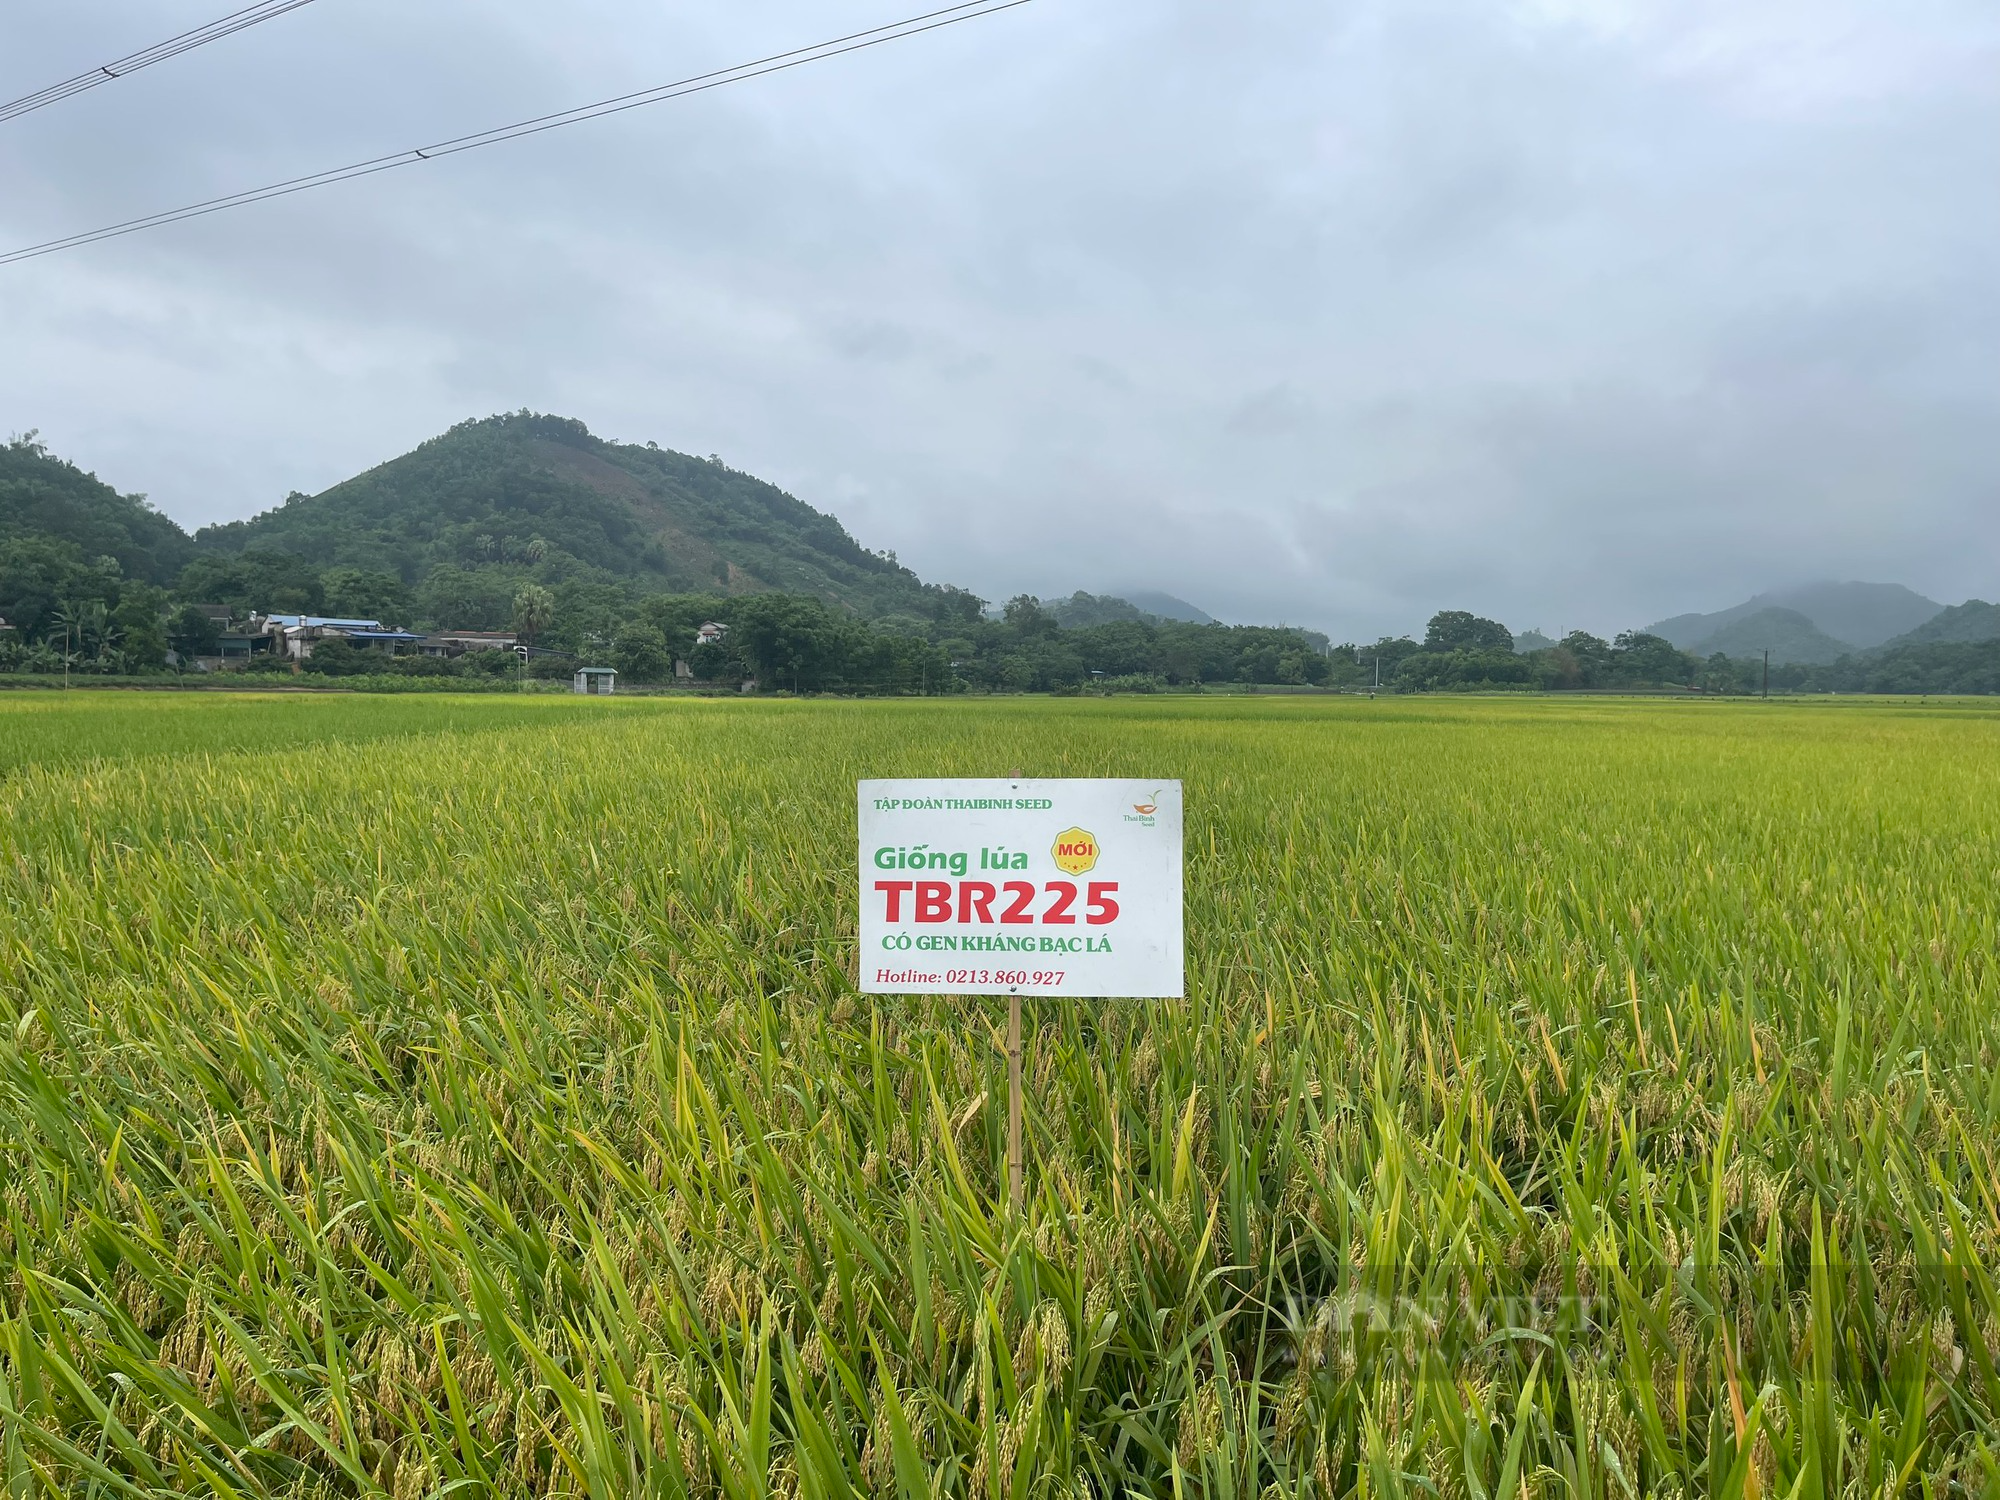 Giống lúa mới có gen kháng bạc cho năng suất cao vượt trội trên cánh đồng ở huyện miền núi của Thái Nguyên - Ảnh 4.